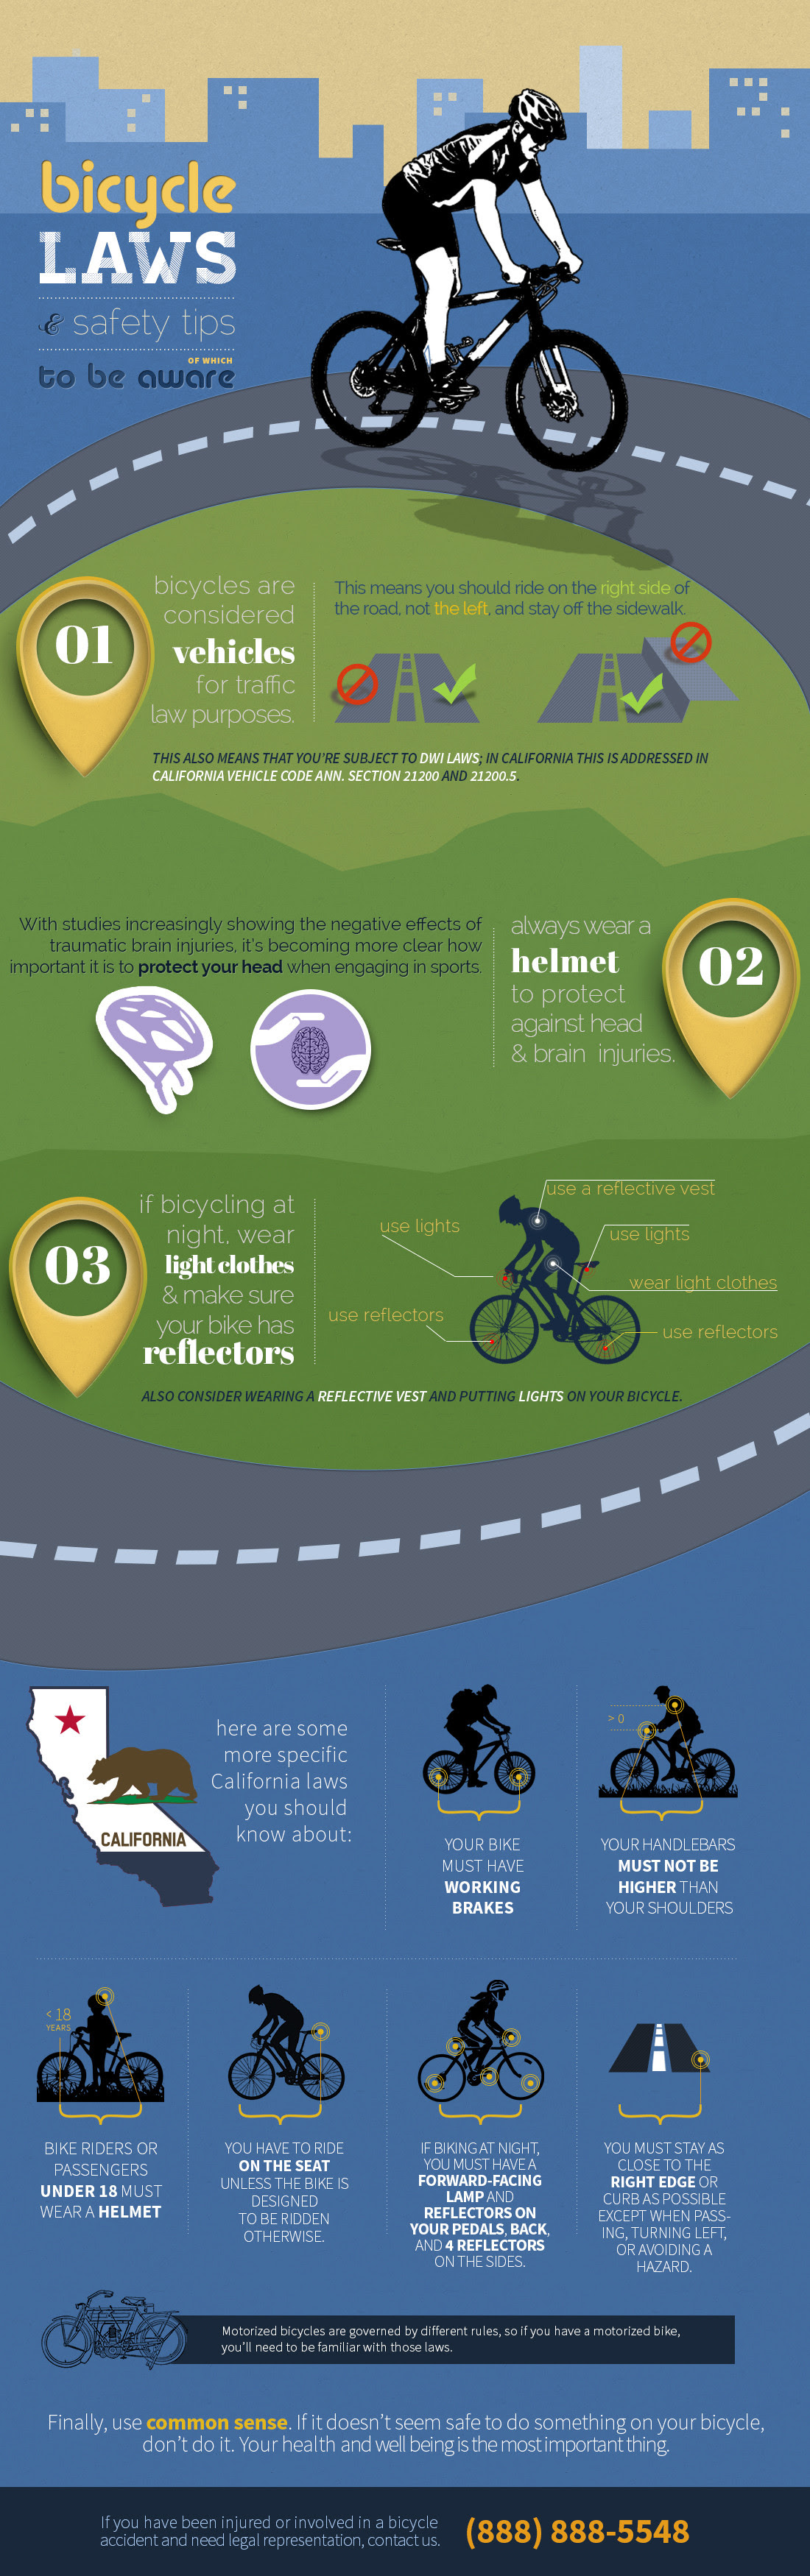 Bicycle laws and Safety #infographic - DkzDWkszBx2UWGg0lTgUwvzrkSZiWR MTTK Z 4nlyoDnm3JZhB21a4Arb8tfXB5Gmo=s0 D